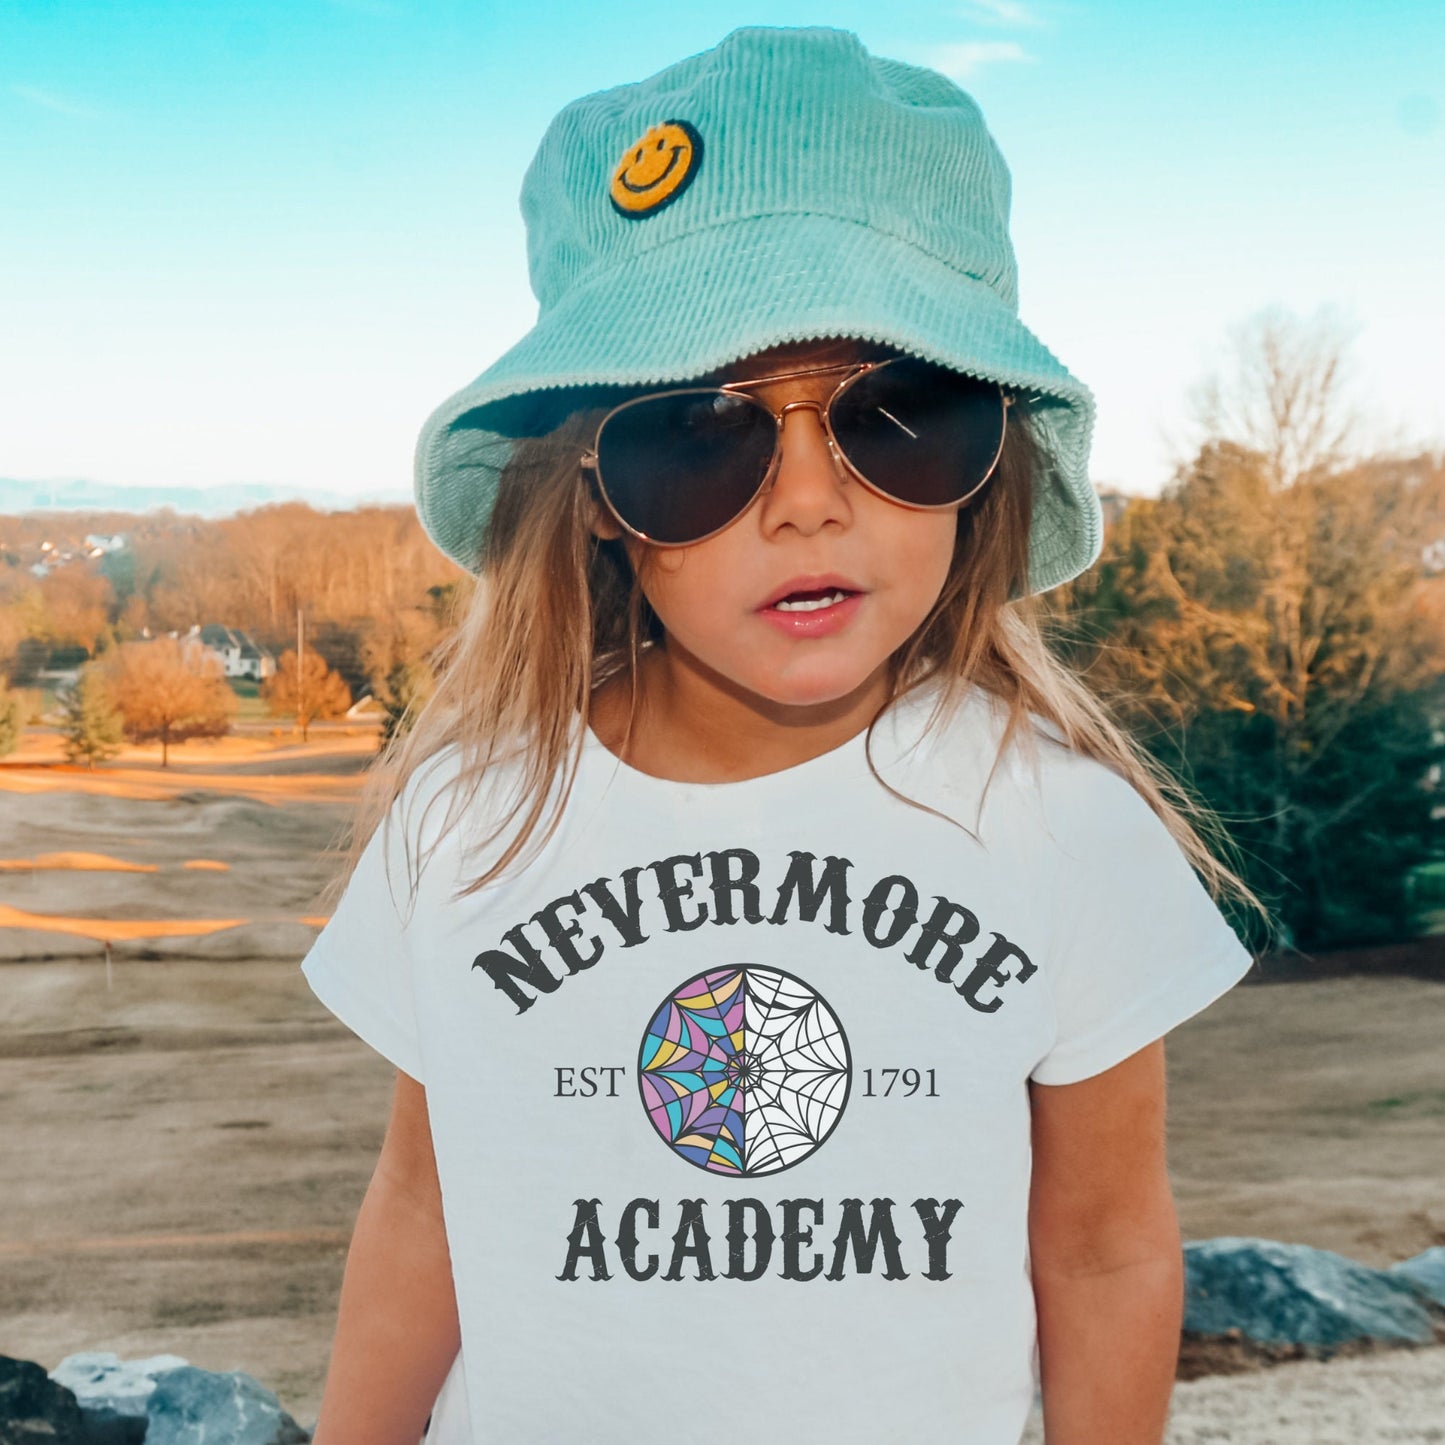 Nevermore Academy,Nevermore Sweatshirt,Wednesday Sweatshirt,Wednesday netflix,academy sweatshirt, Wednesday Costume, Wednesday png